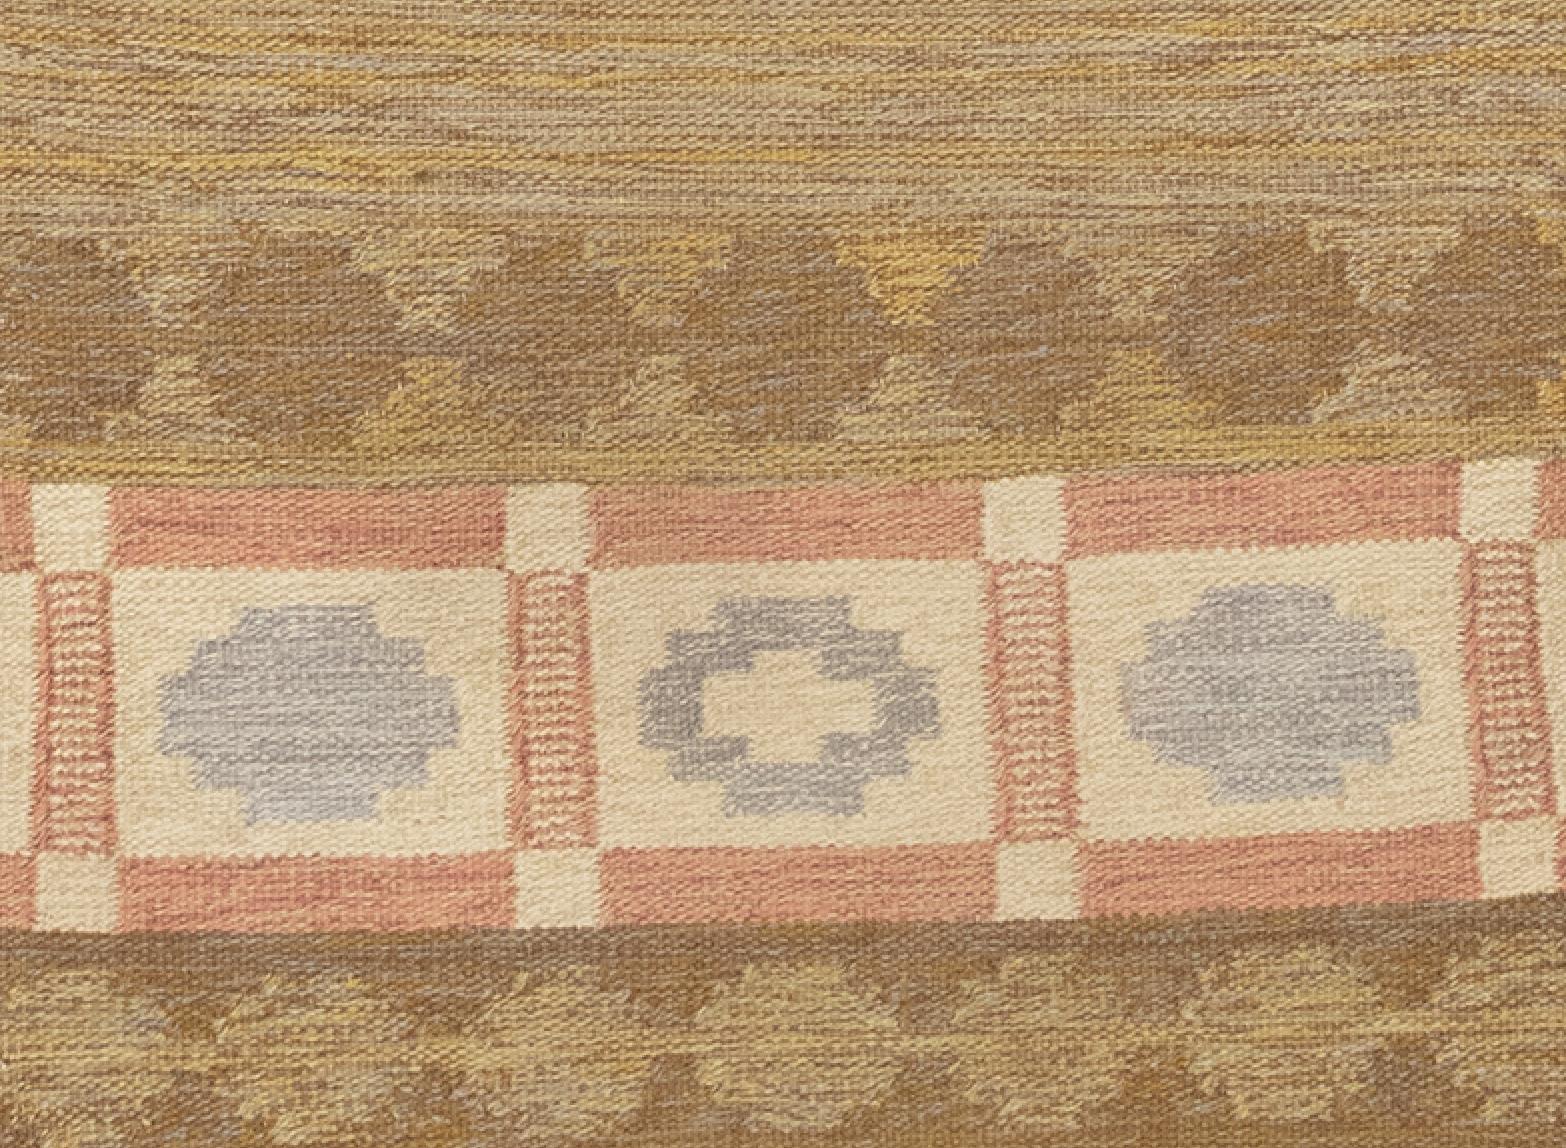 Il s'agit d'un chemin de table scandinave tissé à plat, datant d'environ 1950.  Il présente une charmante palette de couleurs basée sur des tons pastel de couleurs douces.  Dans le sol, la combinaison de brun, de bleu, de jaune et d'ivoire crée un